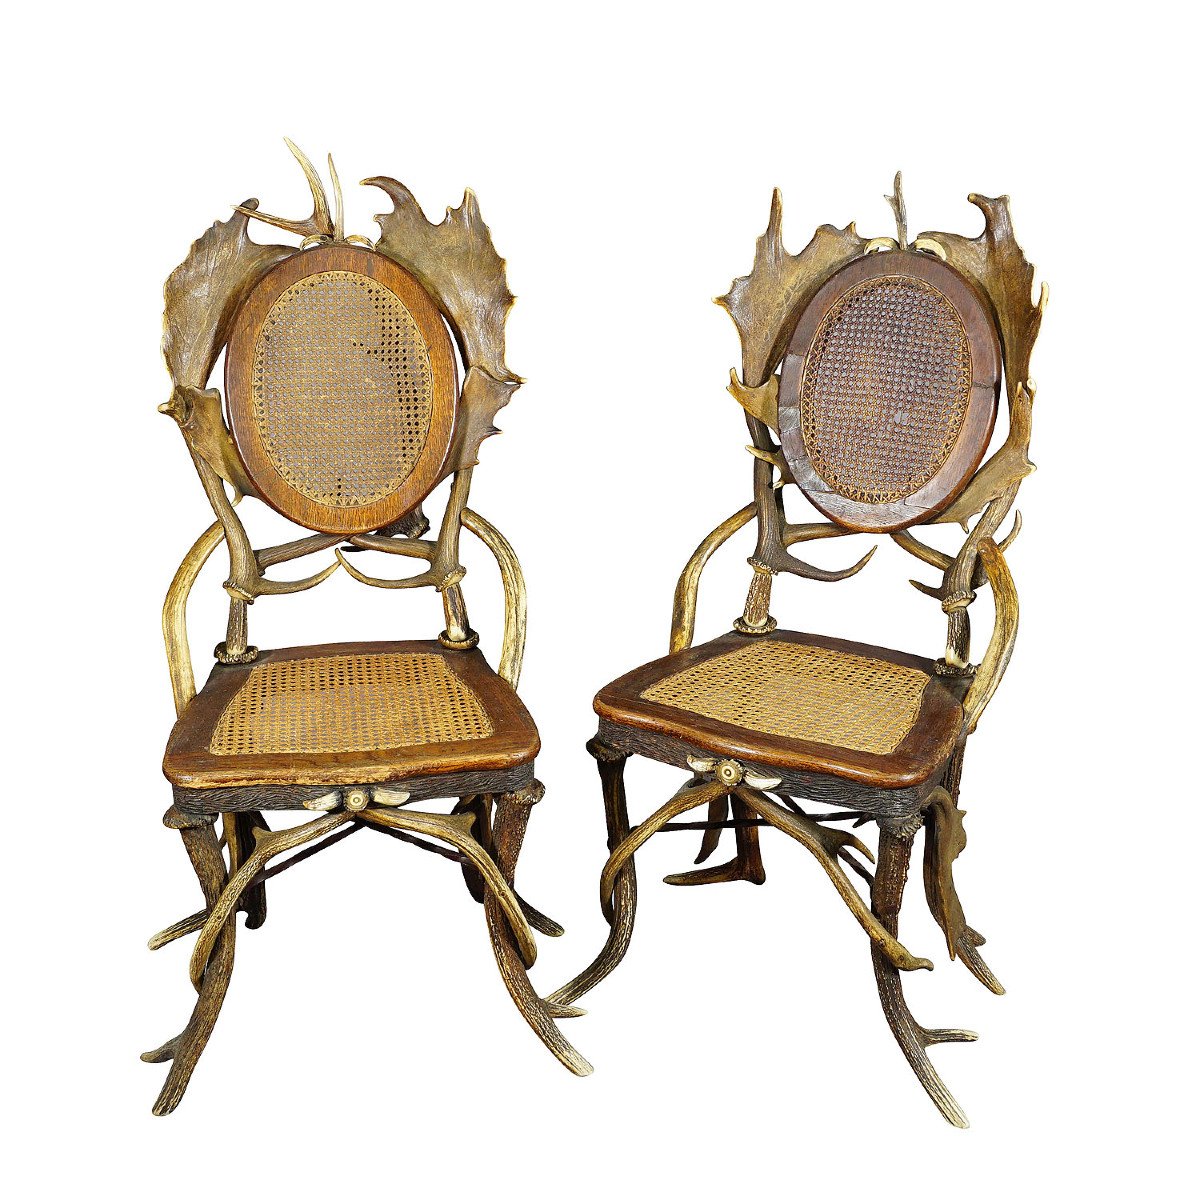 Pair Of Rustic Deer Antler Dining Chairs, Germany Ca. 1900